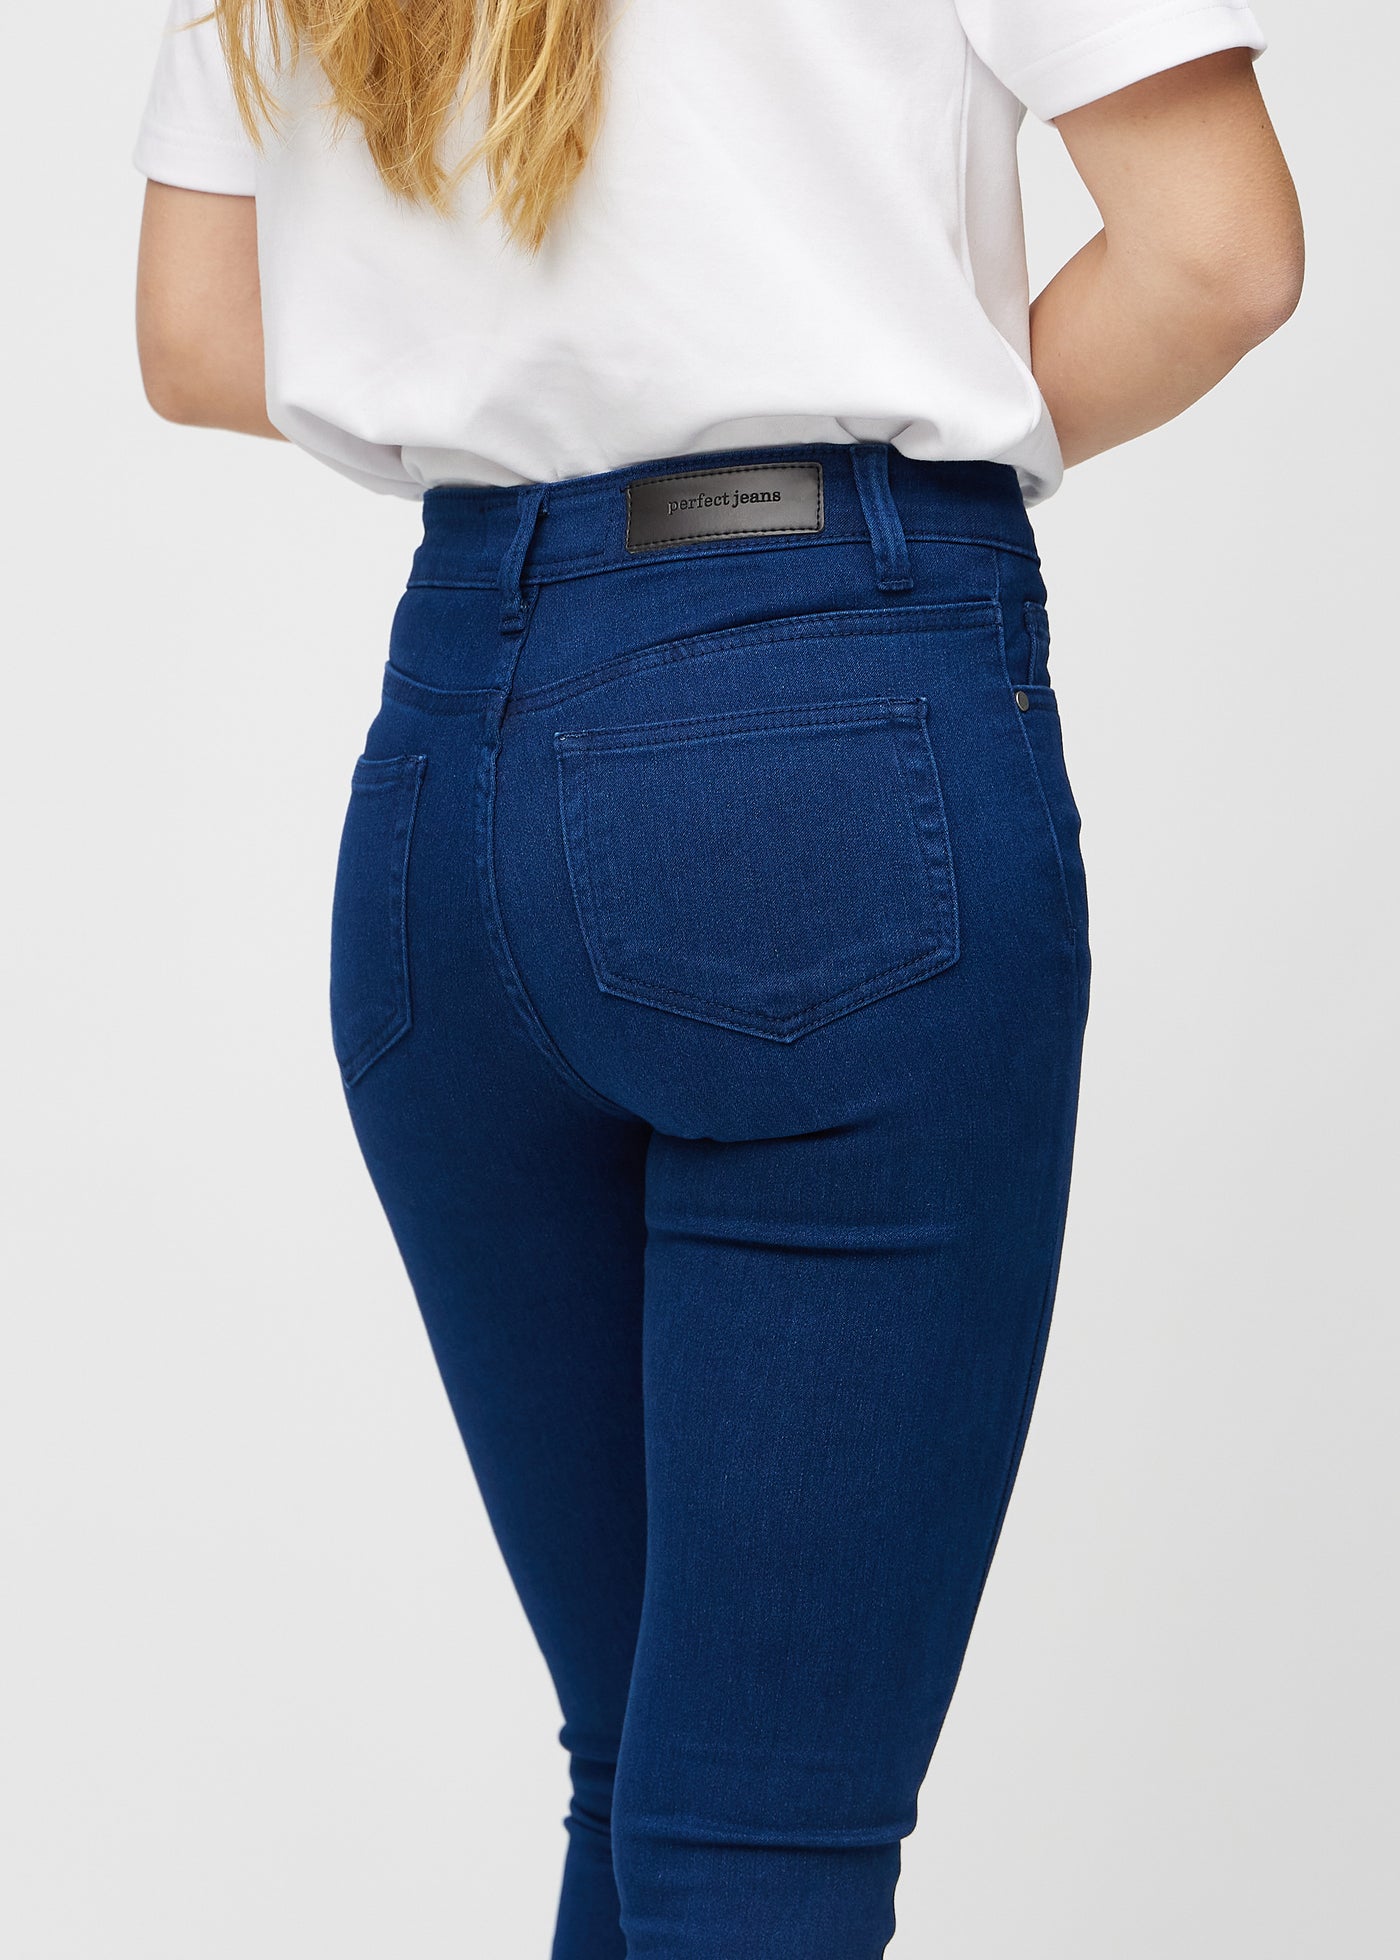 Mørkeblå skinny jeans set bagfra tæt på for at vise detaljer.